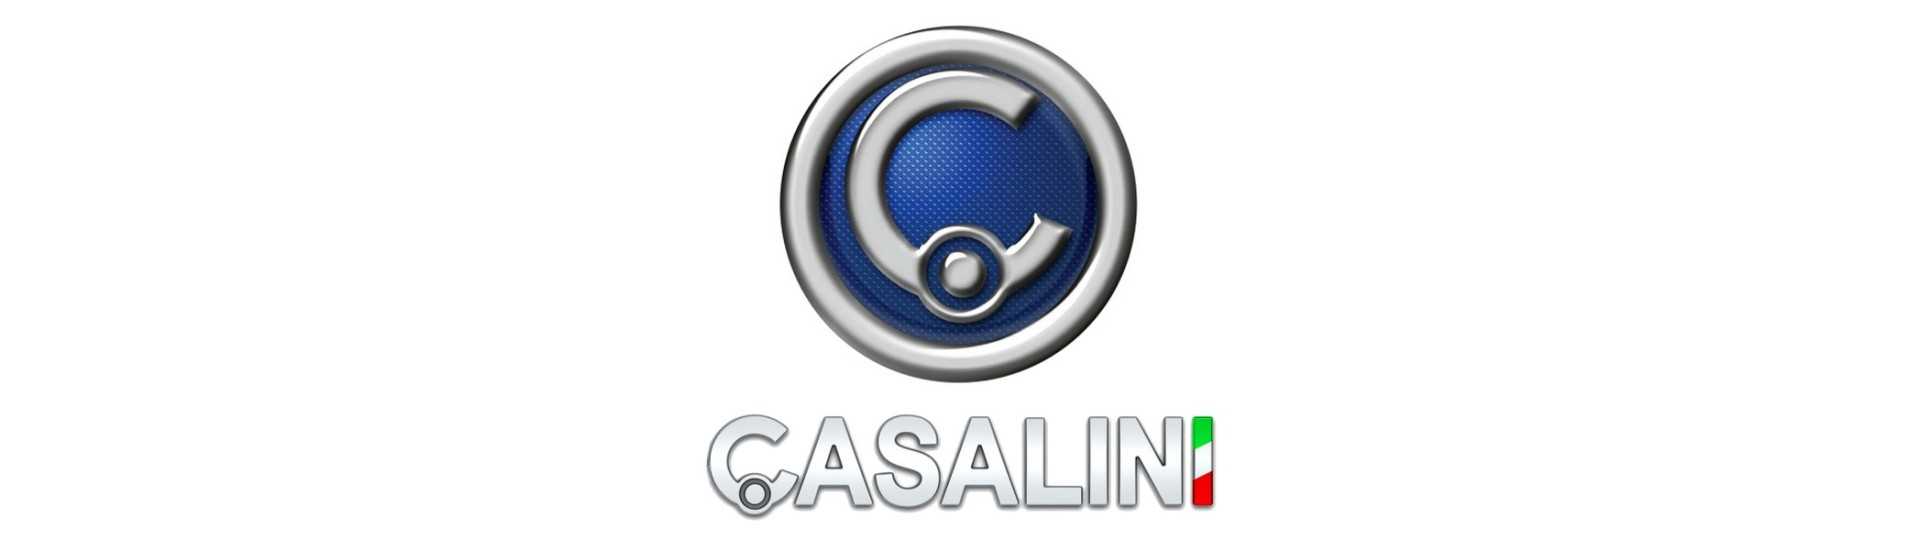 Insonorización de motor al mejor precio para un coche sin carnet Casalini